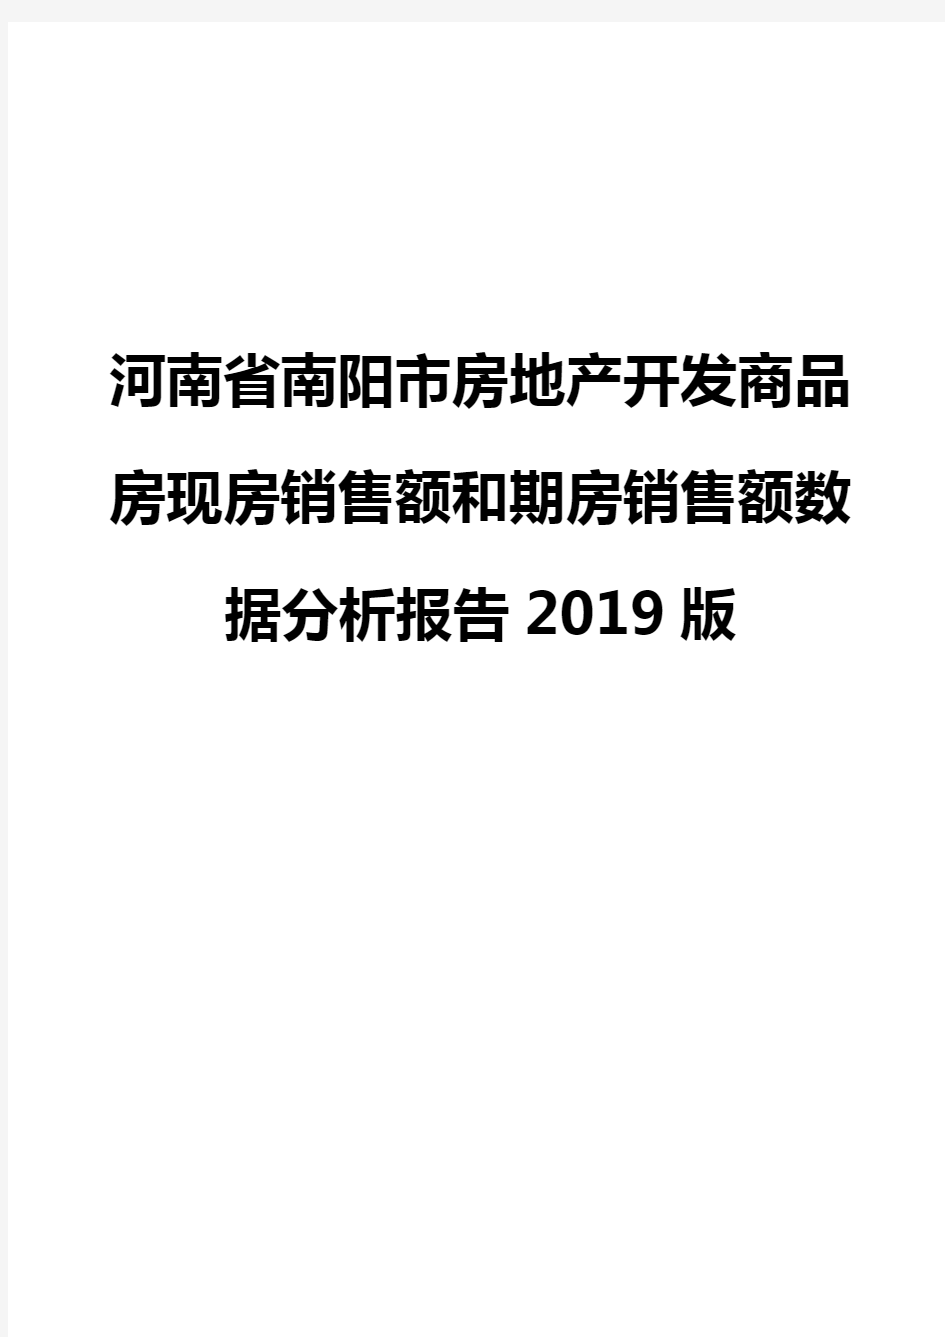 河南省南阳市房地产开发商品房现房销售额和期房销售额数据分析报告2019版